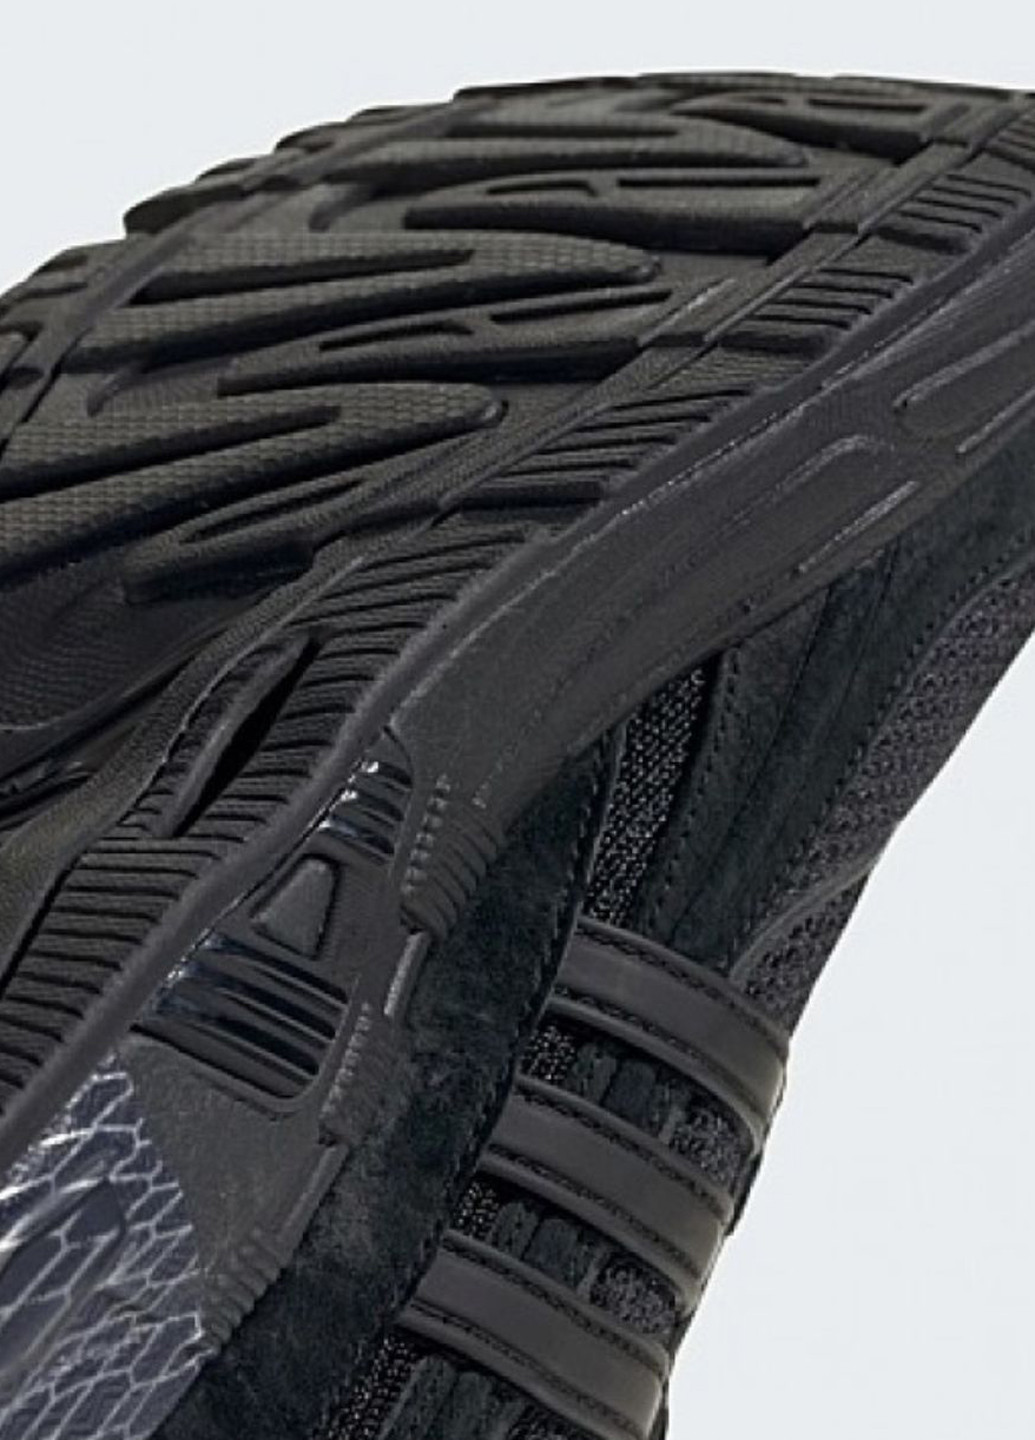 Черные демисезонные кроссовки id8307_2024 adidas Response Cl Shoes